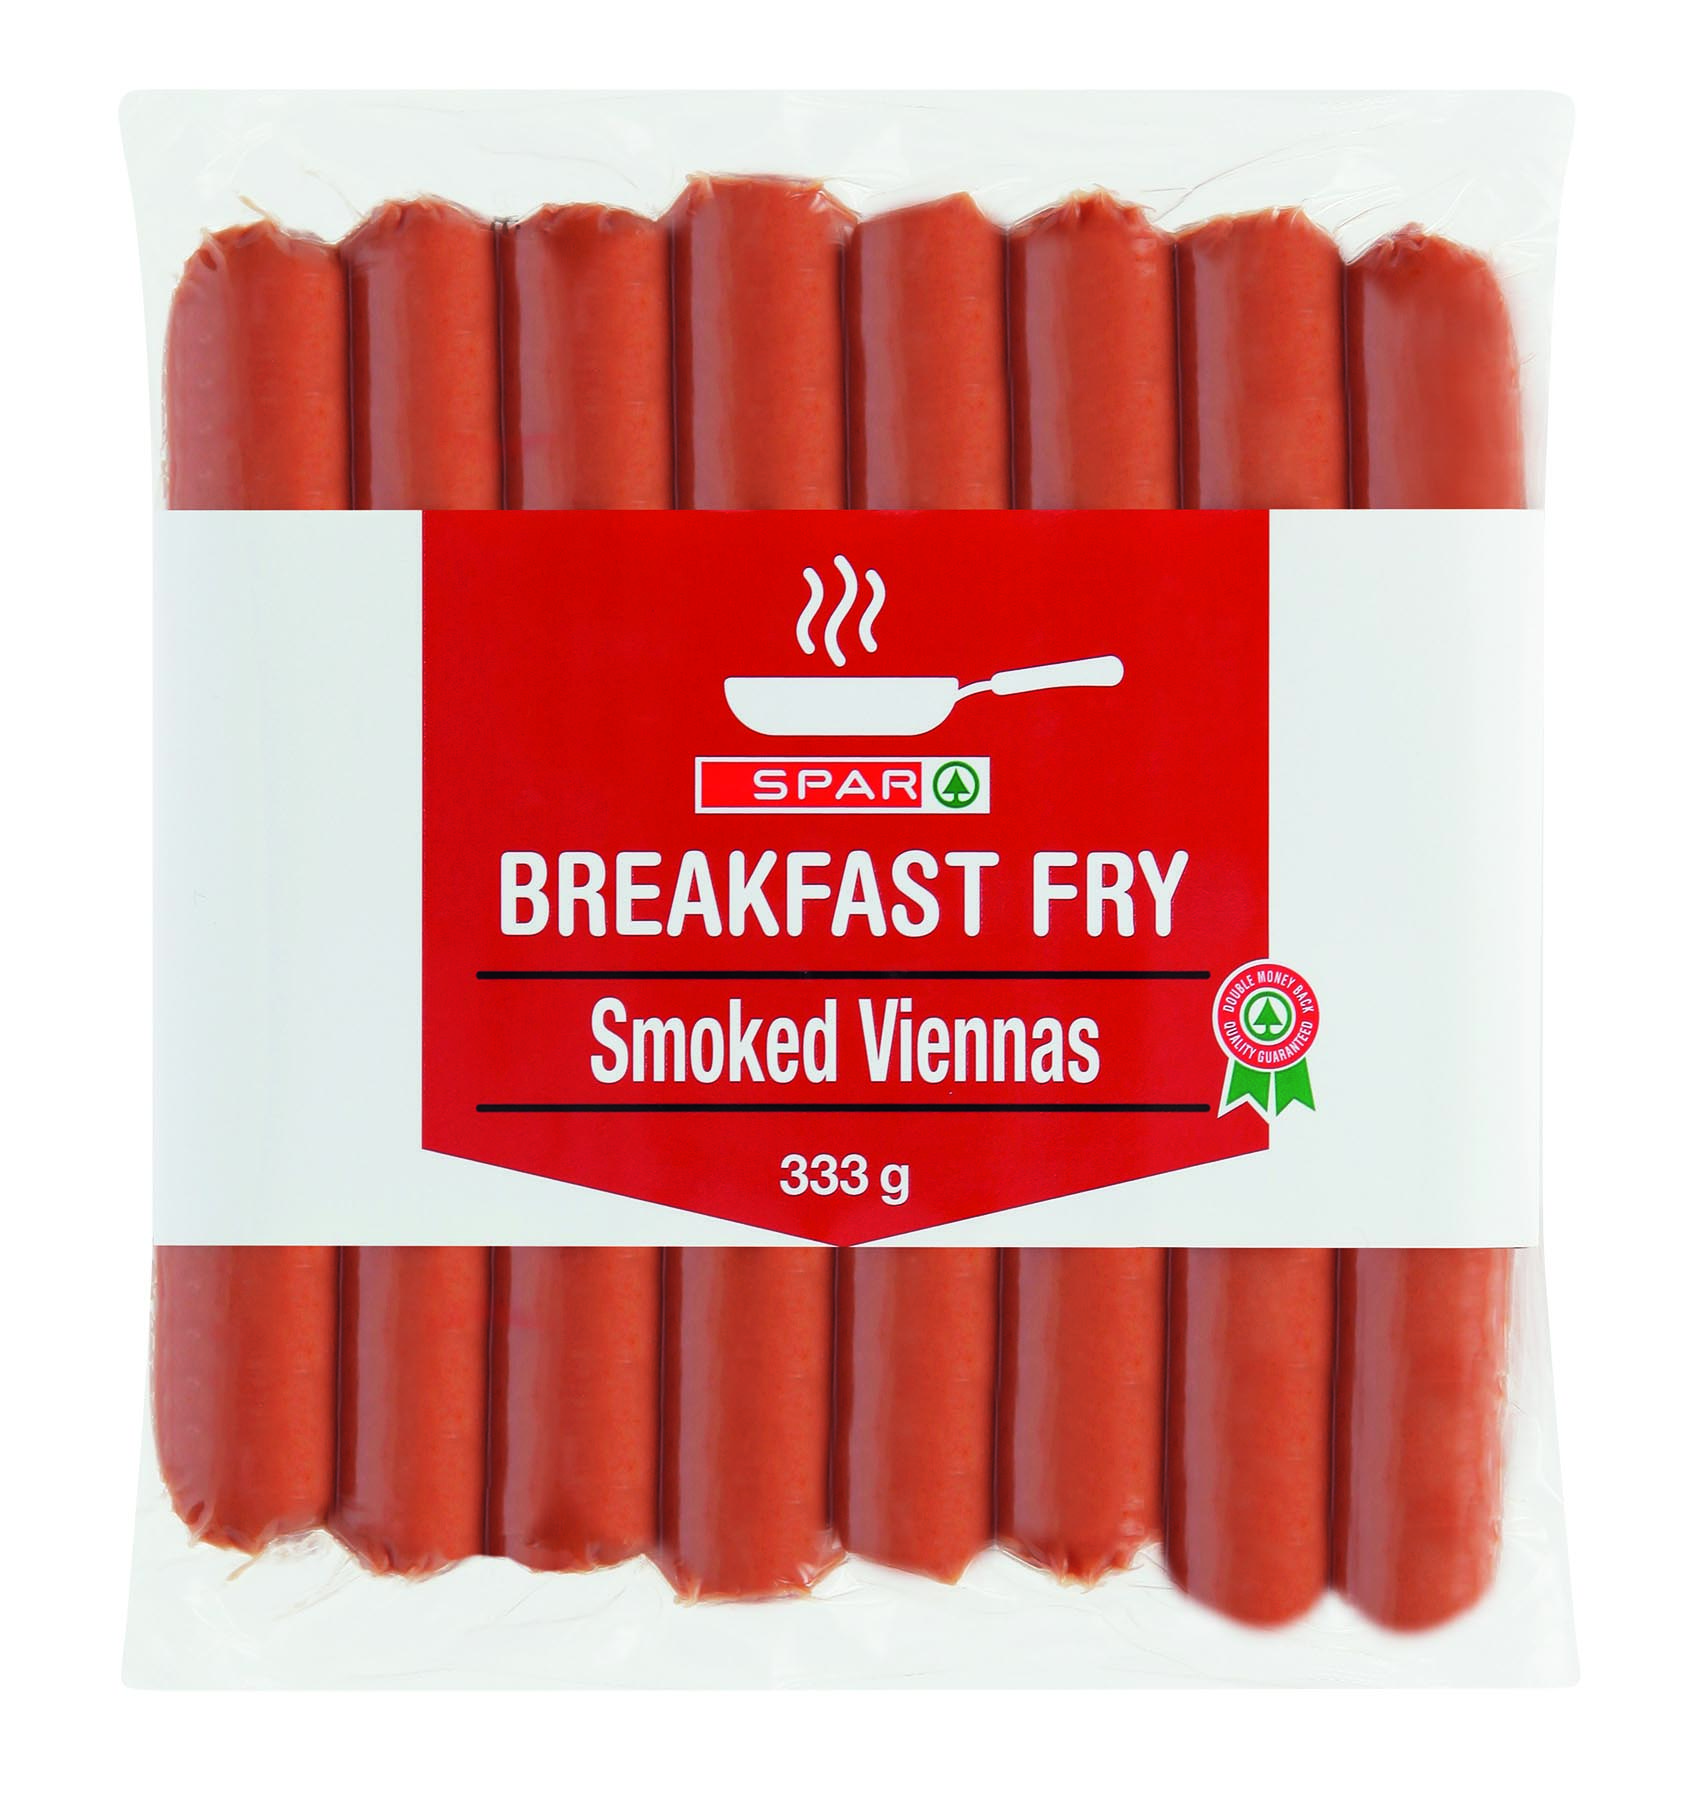 breakfast fry - smoked viennas